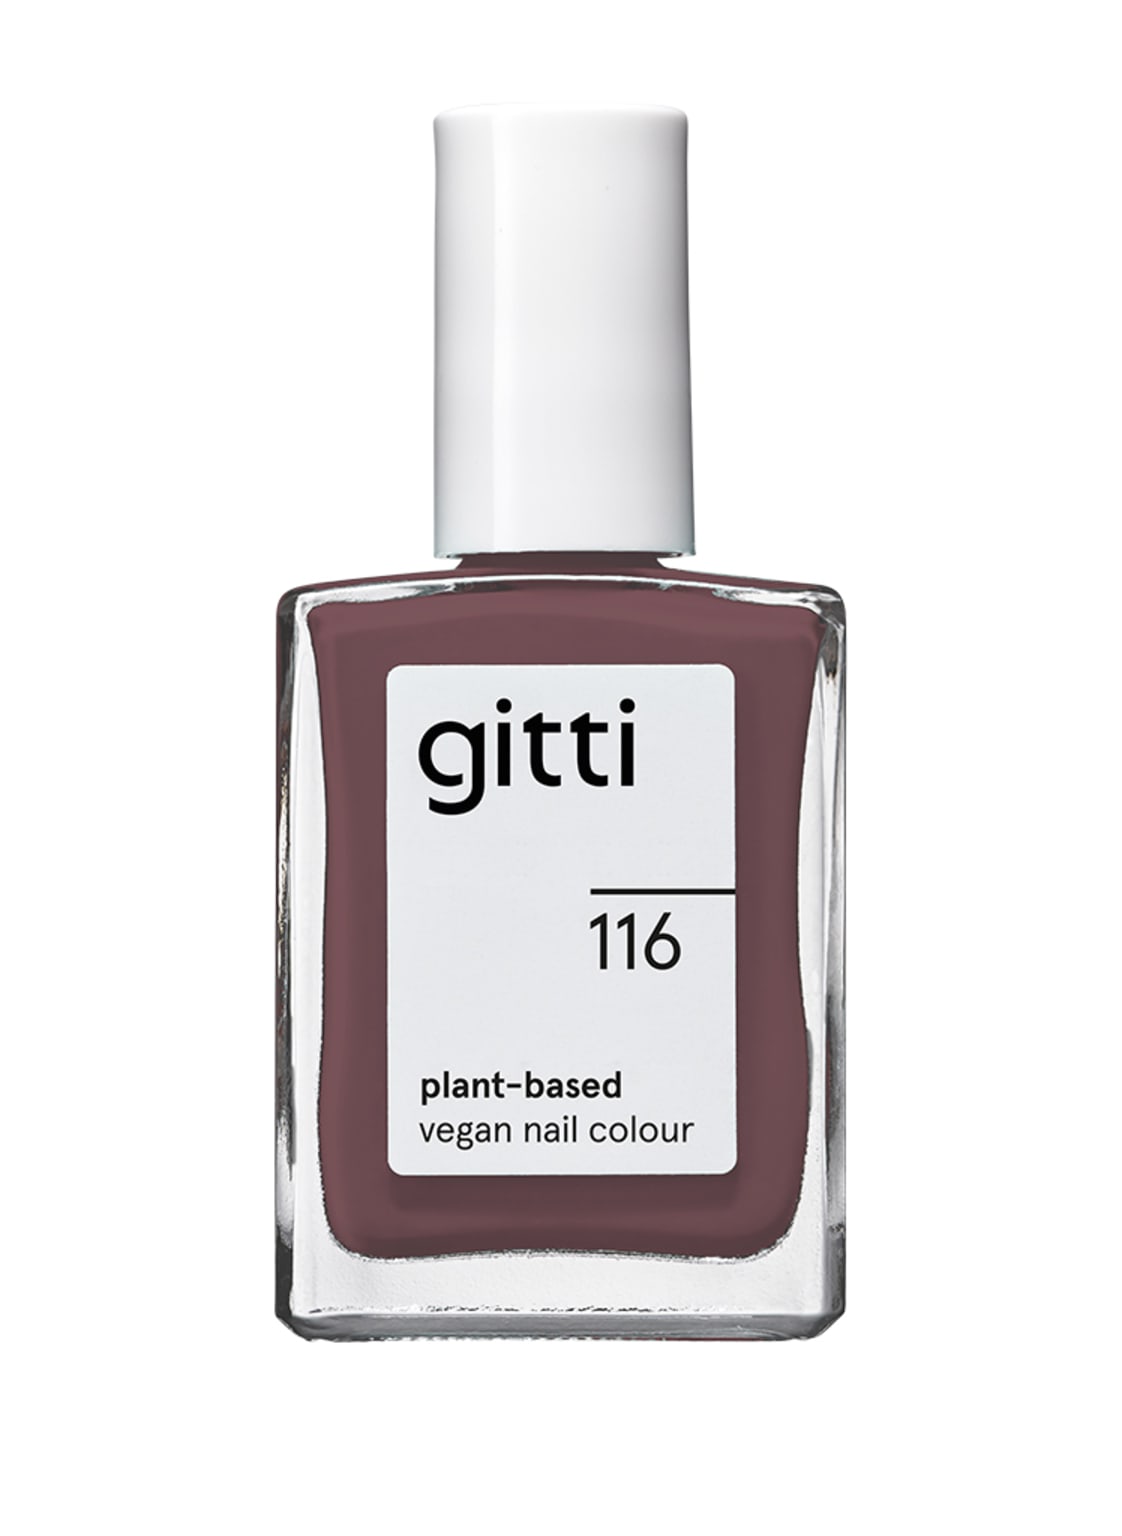 Gitti Plant-Based Vegan Nail Colour Nagellack